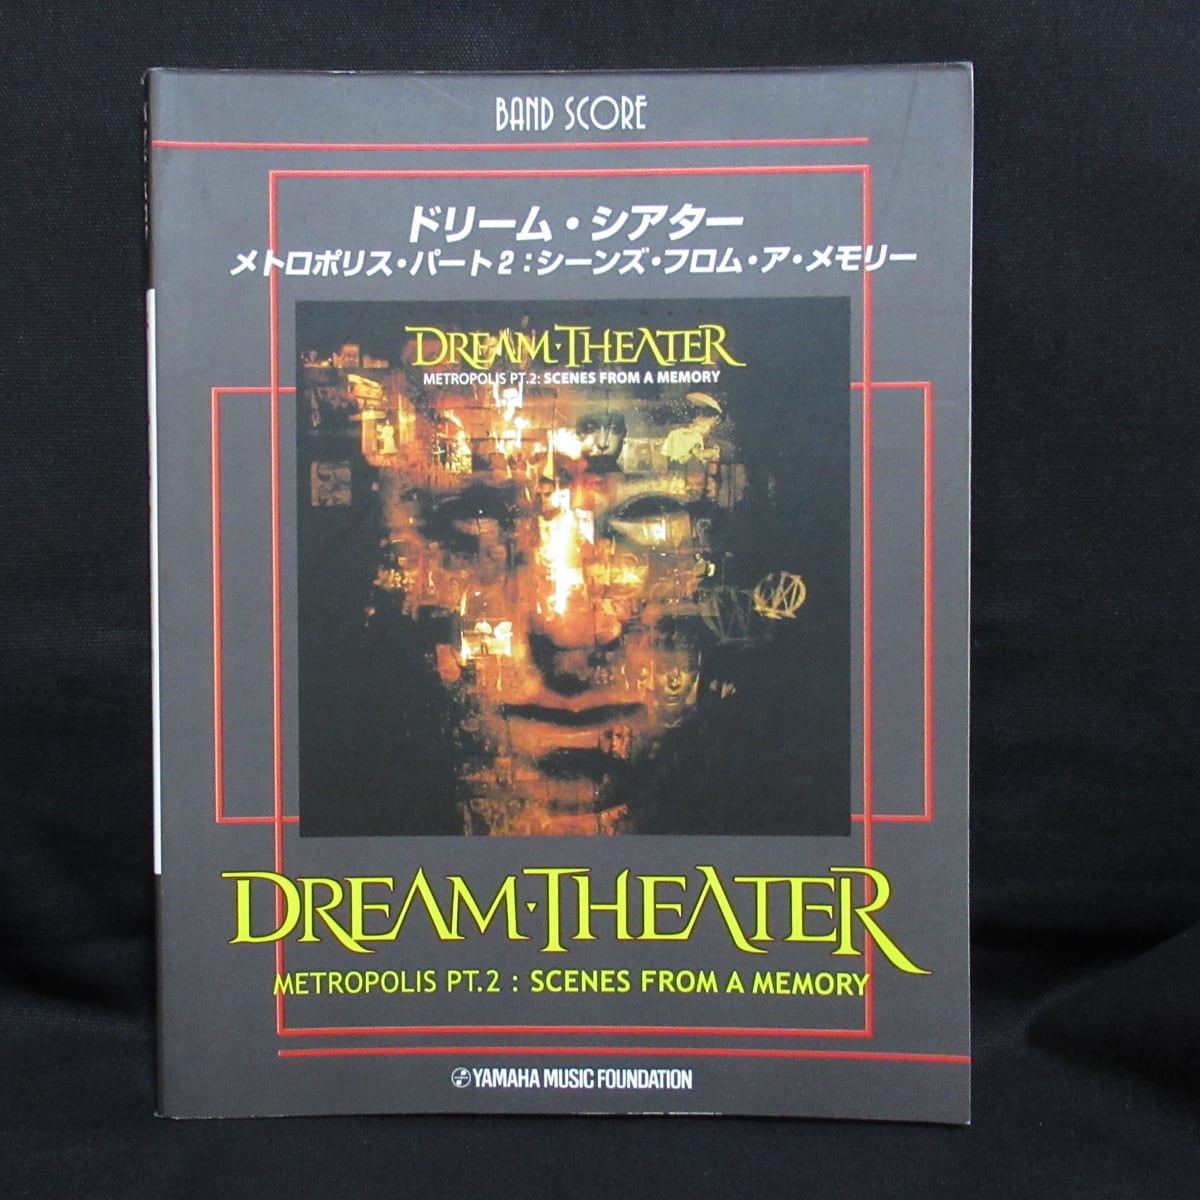 希少 バンドスコア Dream Theater / Train of～